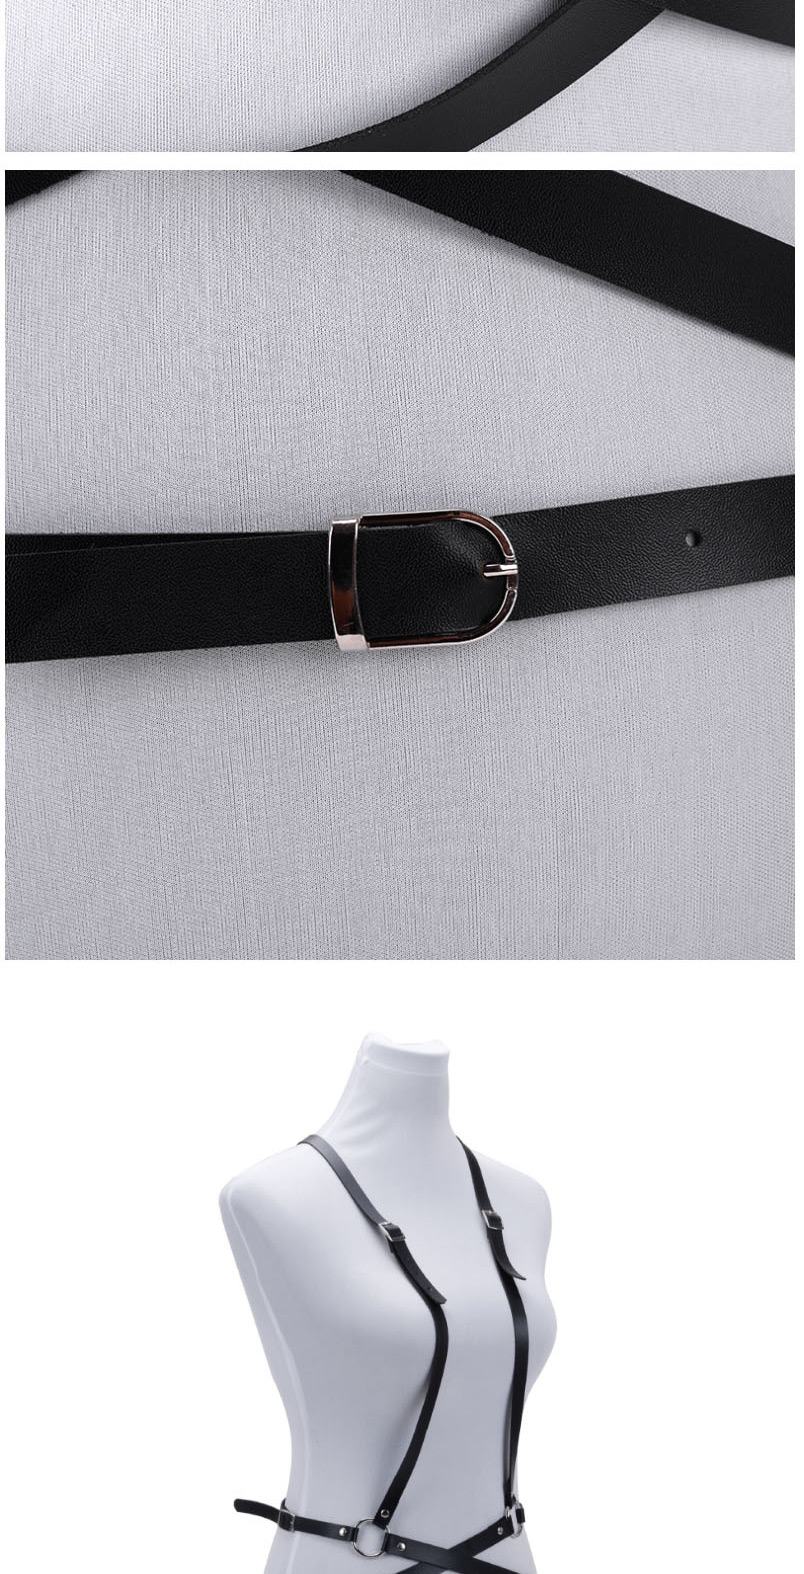 Fashion Black Strap Belt Buckle Cross Hollow Belt,Thin belts